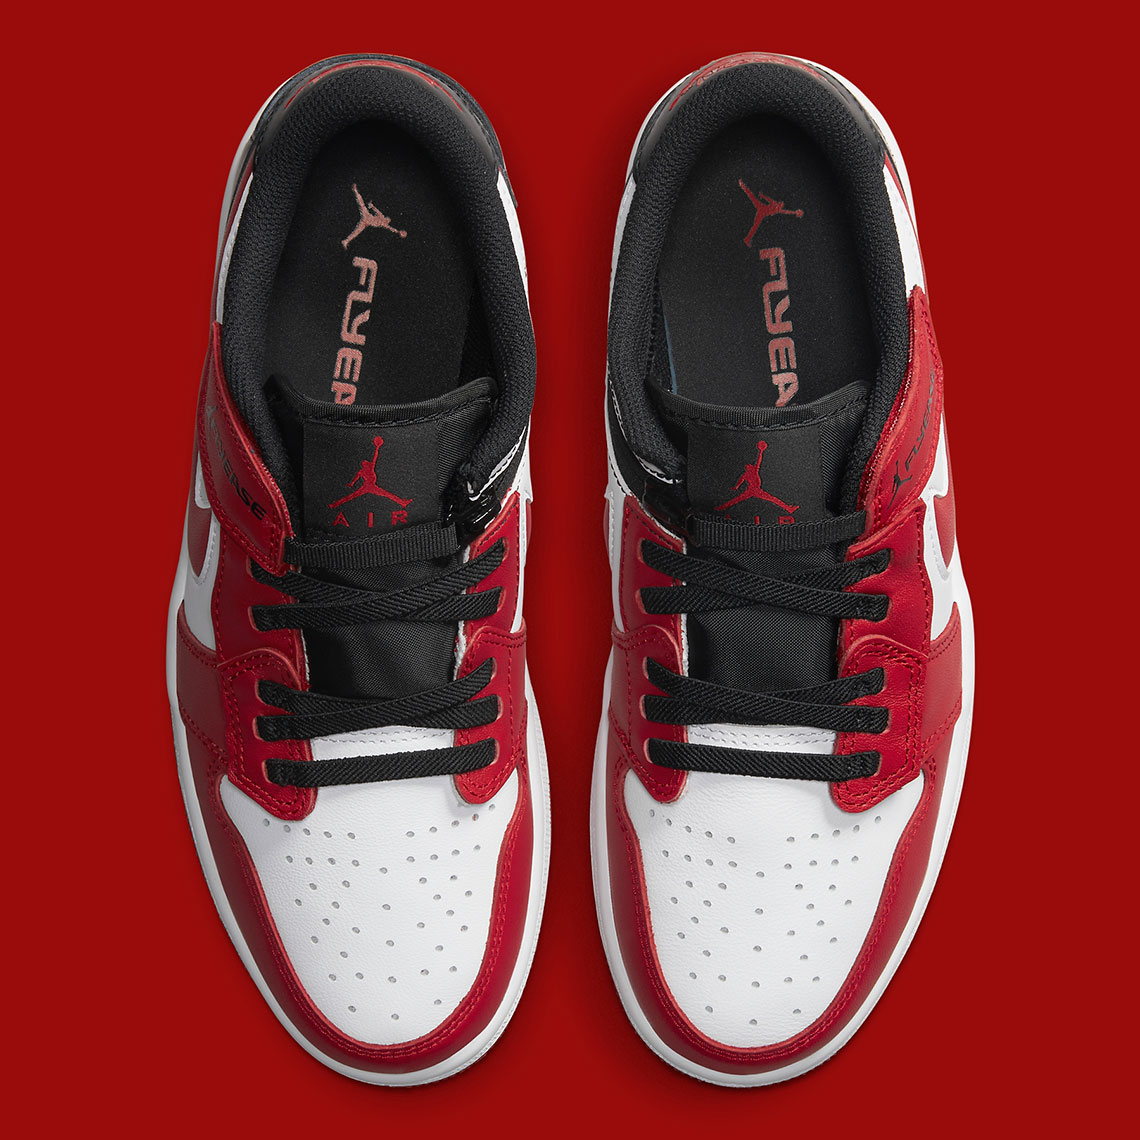 Air Jordan 1 Low Flyease Red Black Release Date 3